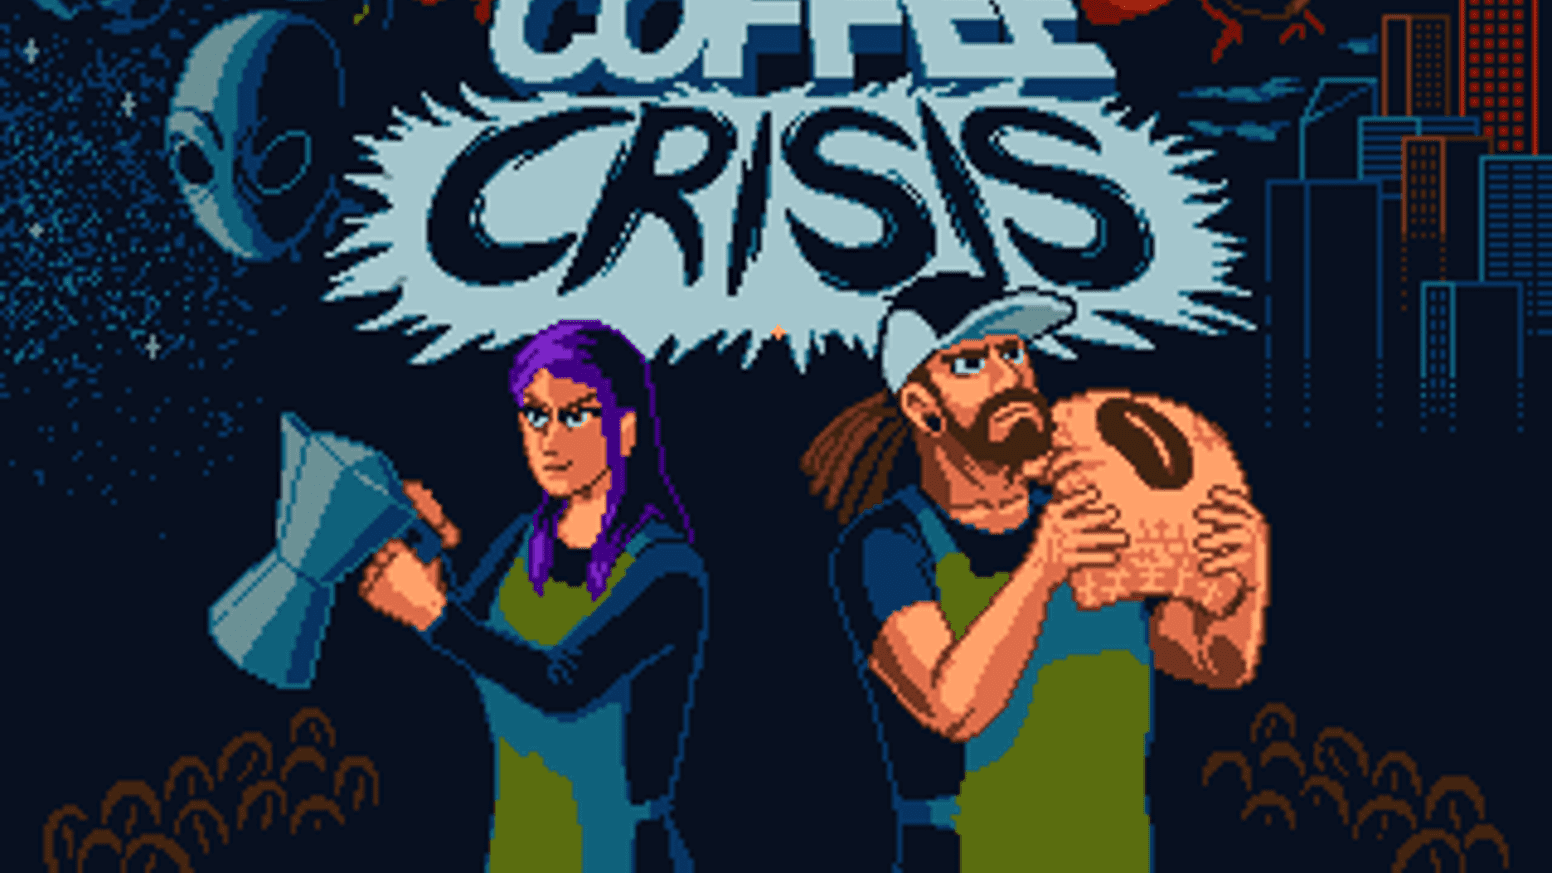 coffee crisi